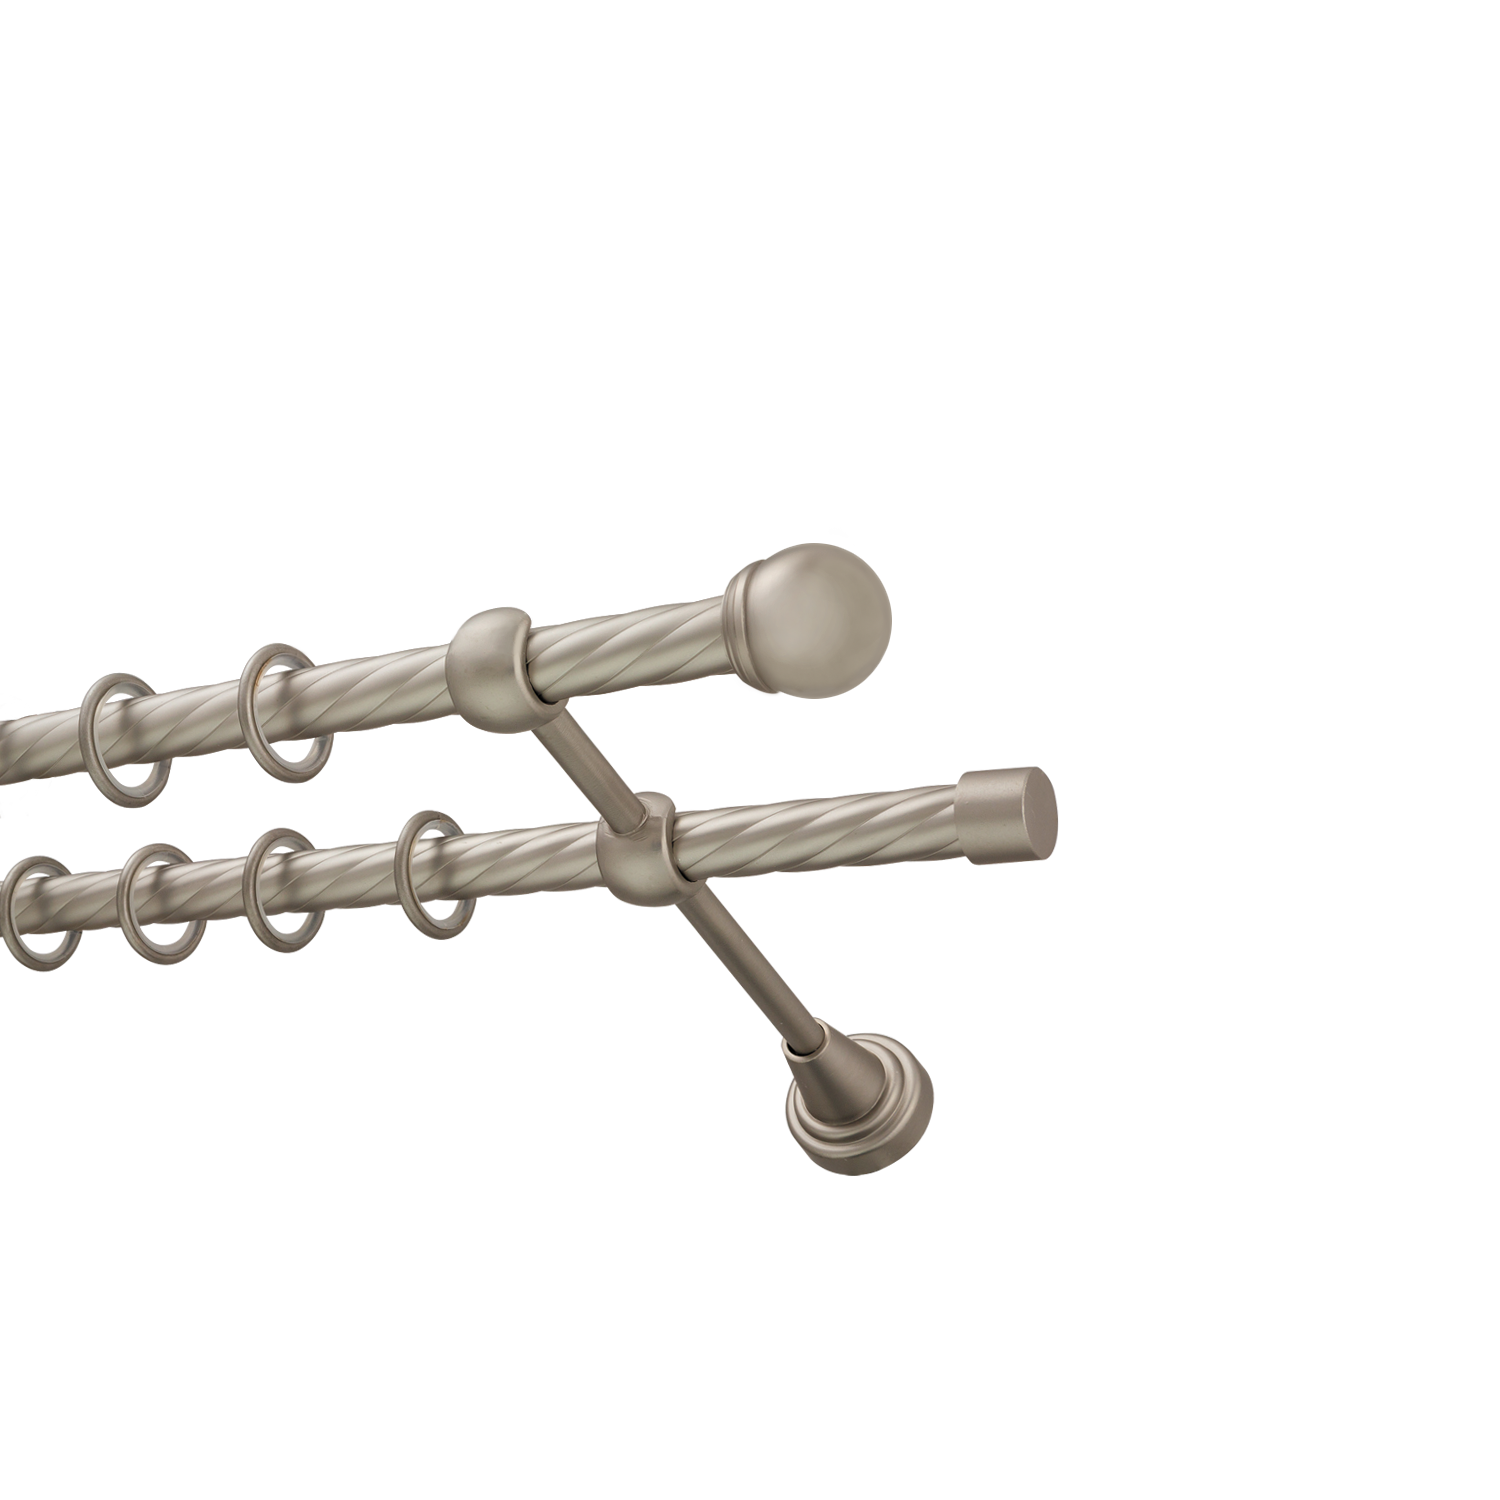 Металлический карниз для штор Вива, двухрядный 16/16 мм, сталь, витая штанга, длина 140 см - фото Wikidecor.ru